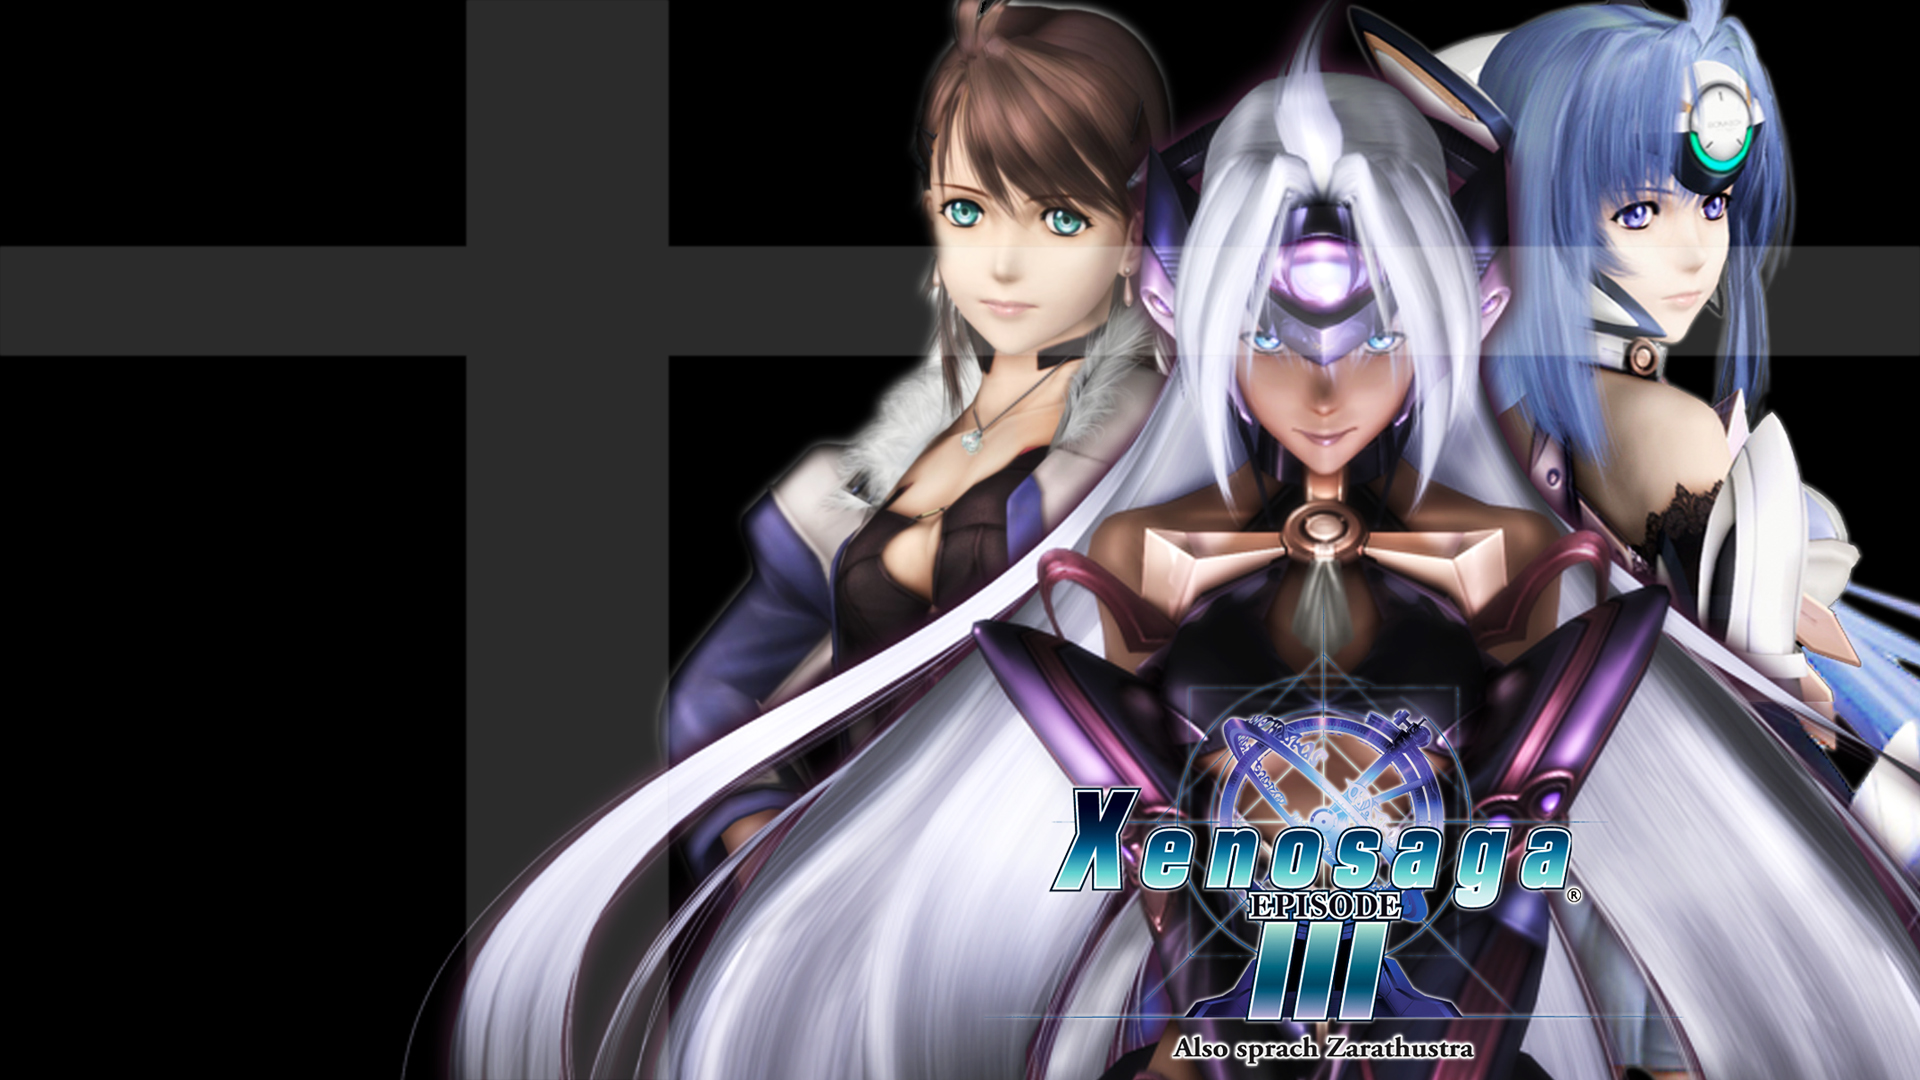 Video Game Xenosaga Episode III: Also Sprach Zarathustra HD Wallpaper | Background Image